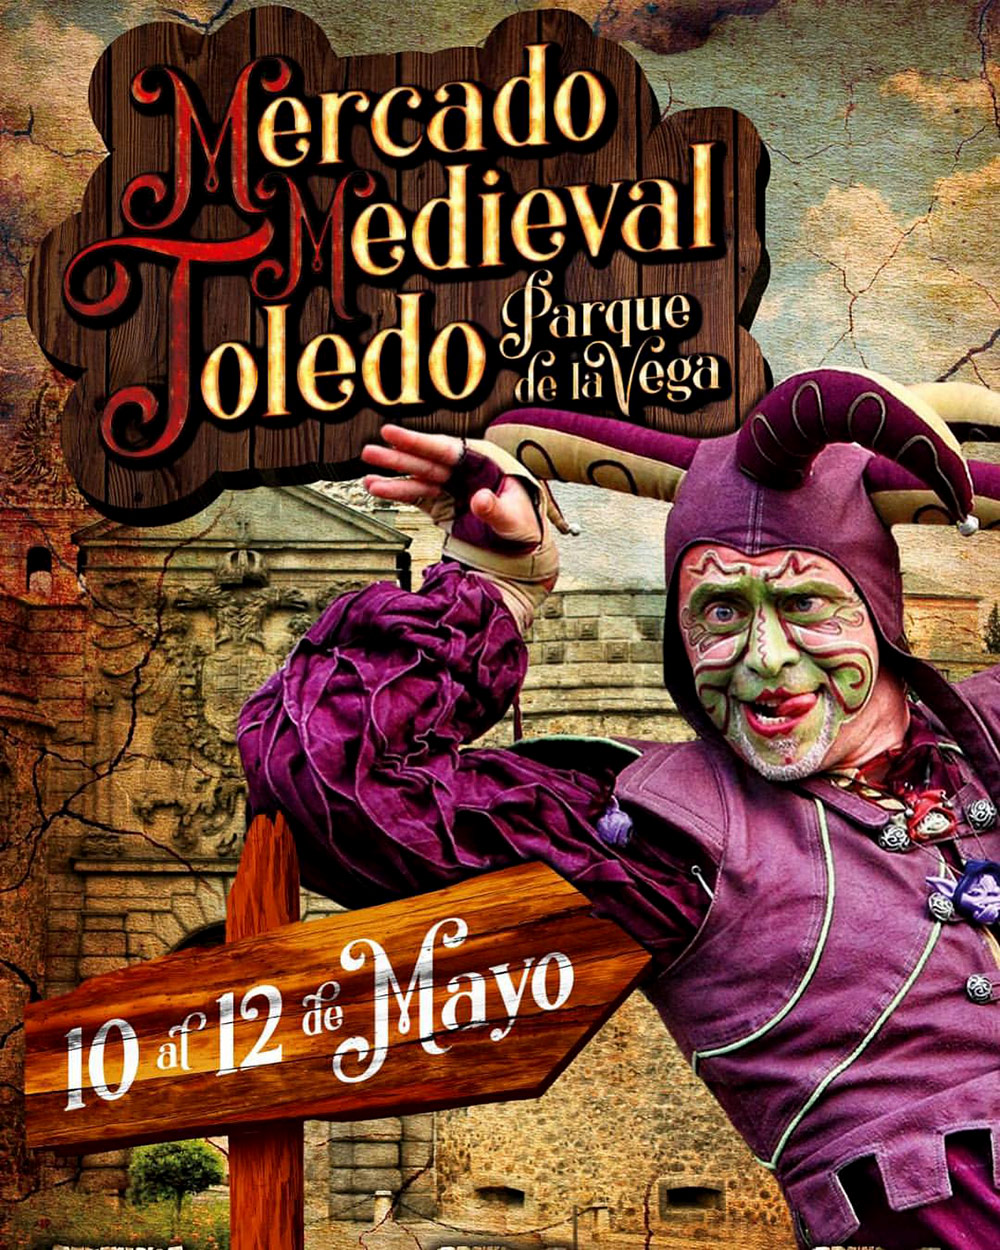 Mercado Medieval en Toledo-2019. Hotel Abad Toledo